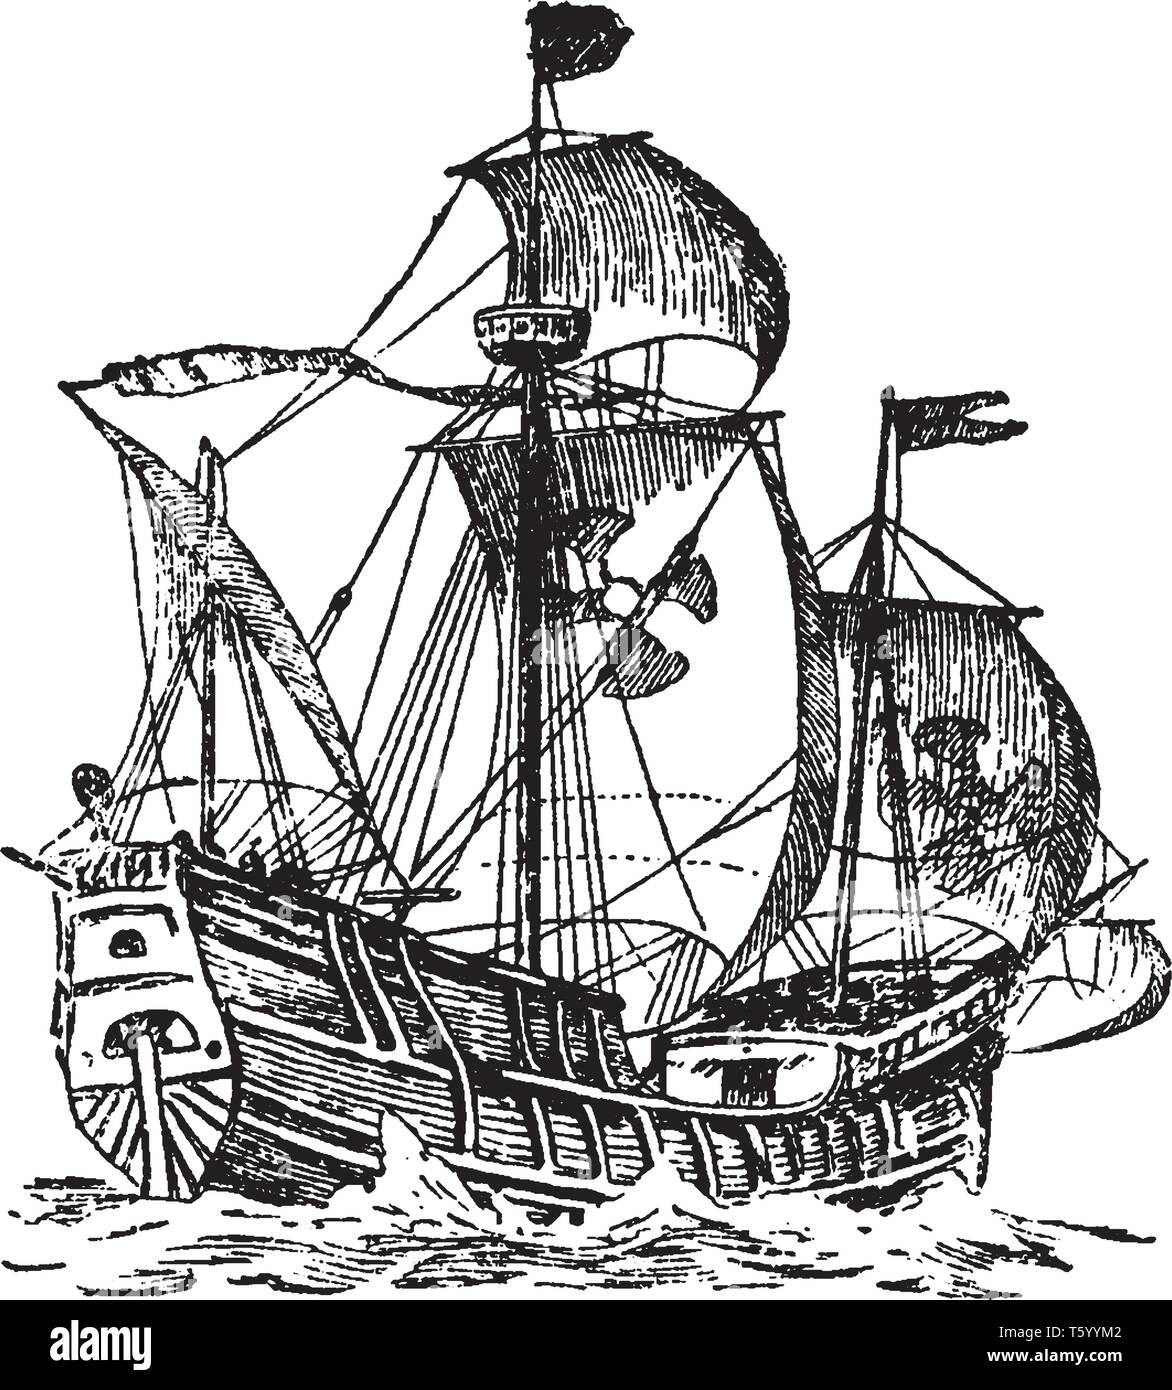 Корабль робинзона крузо. Каракка - Галеон.. Золотая Лань корабль Дрейка. Каравелла каракка и Галеон. Венецианская каракка.